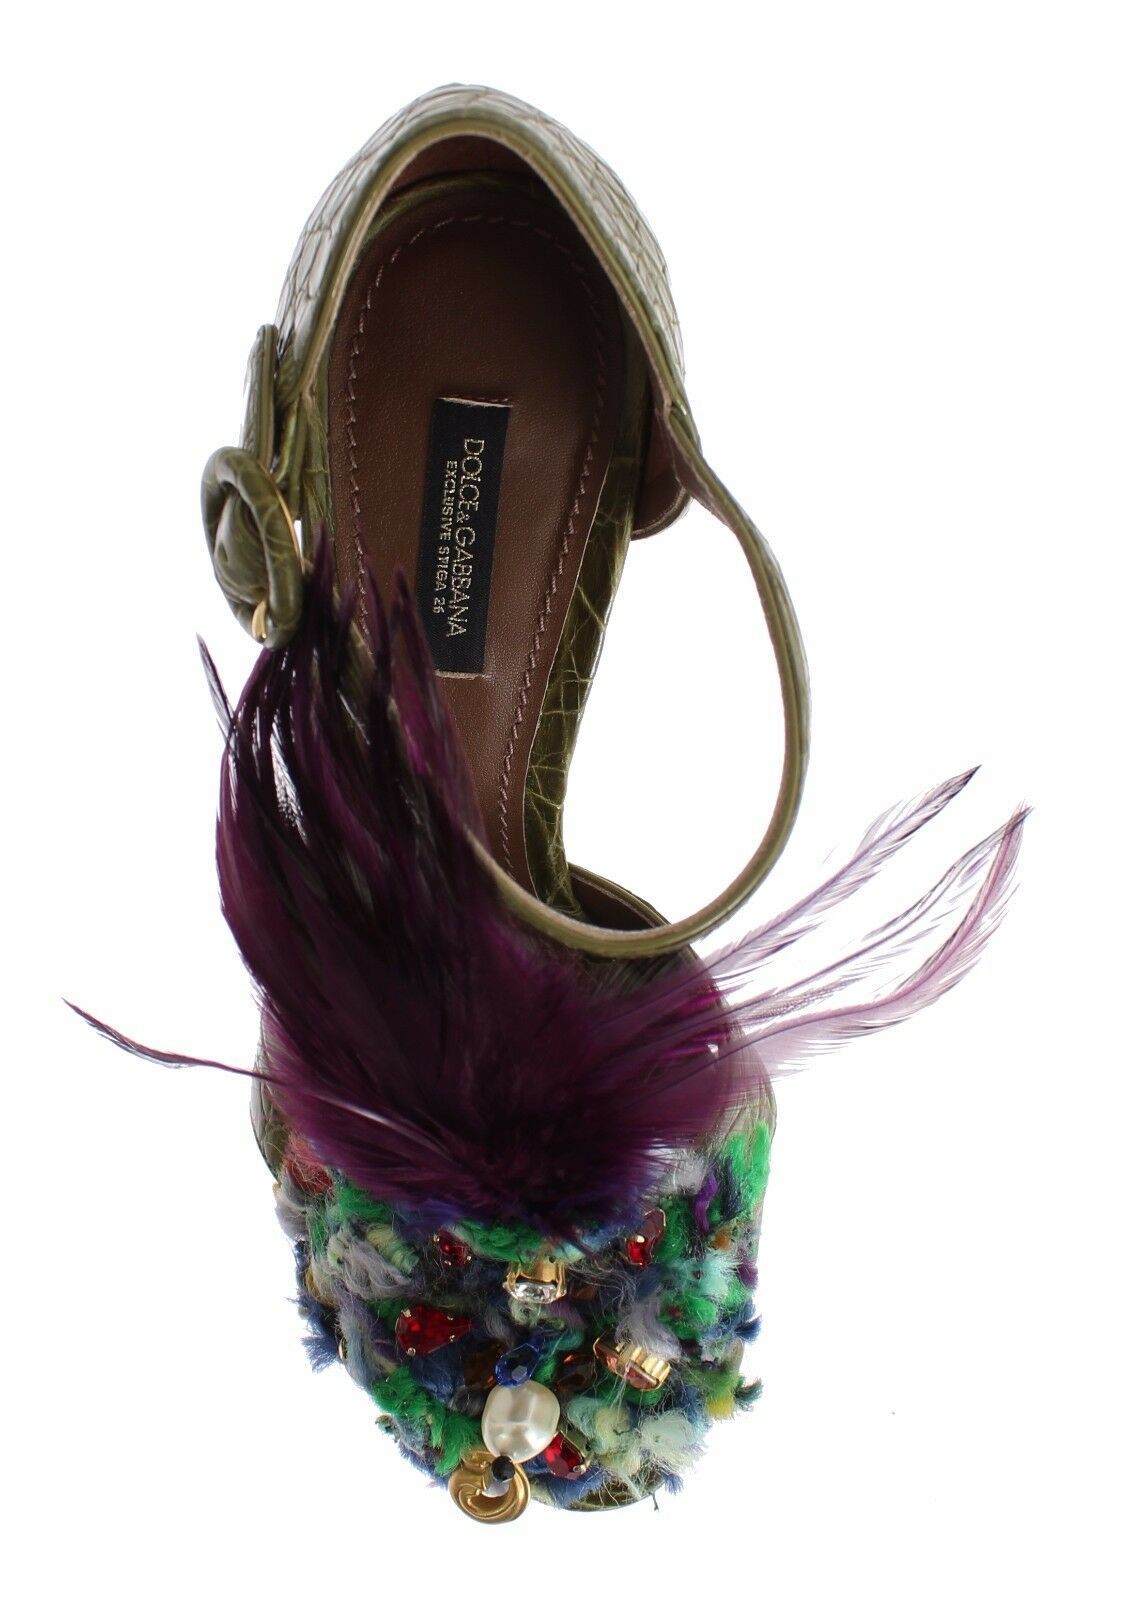 Dolce & Gabbana Green Leather Crystal Platform Sandal Shoes